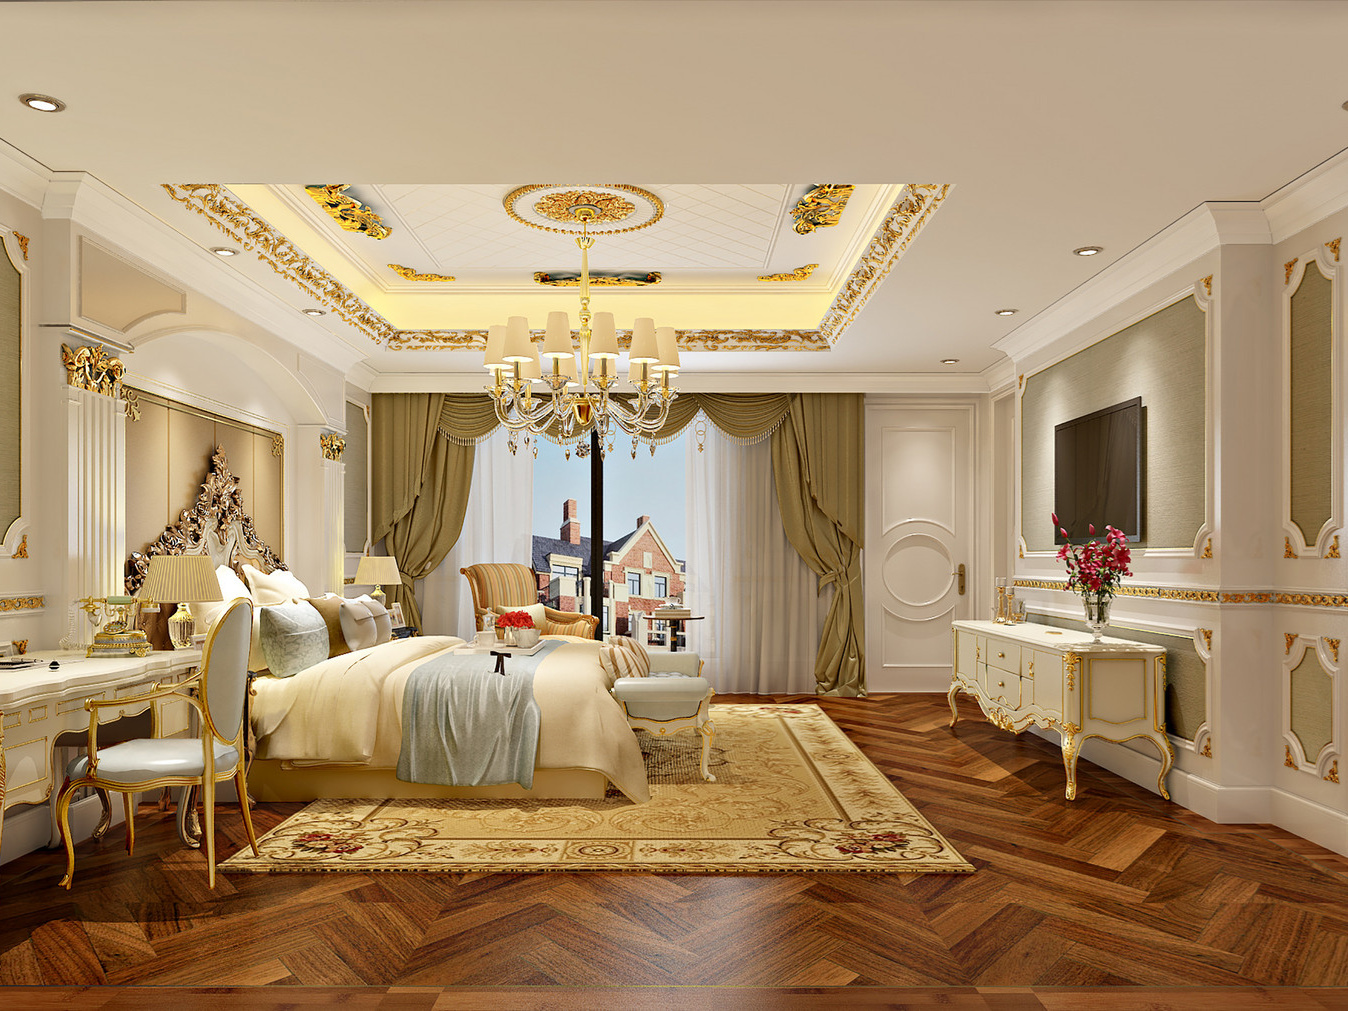 从欧式卧室装修风格效果图了解到欧式风格的类型及其特点